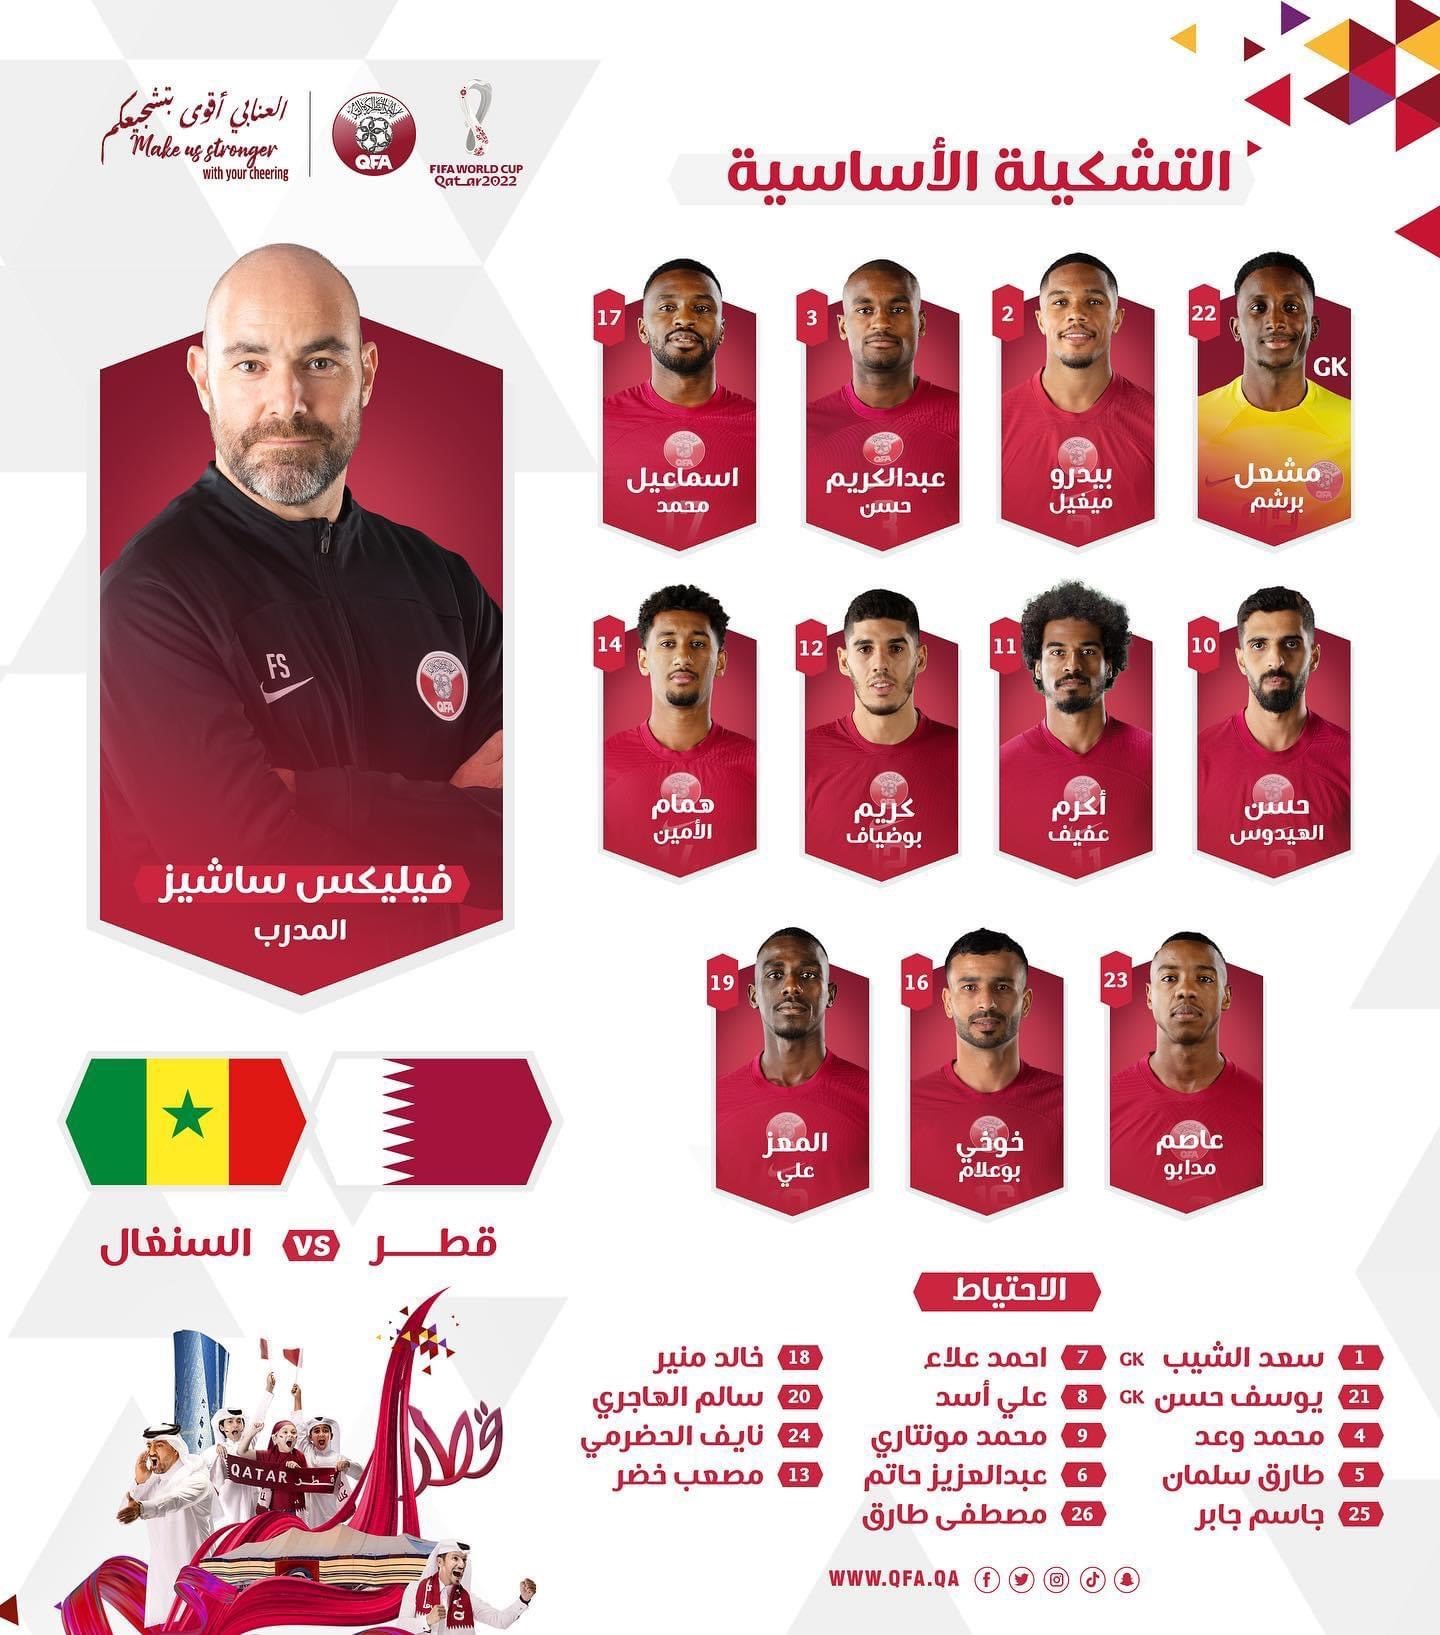 Đội hình ra sân đội tuyển Qatar. Ảnh: Liên đoàn bóng đá Qatar